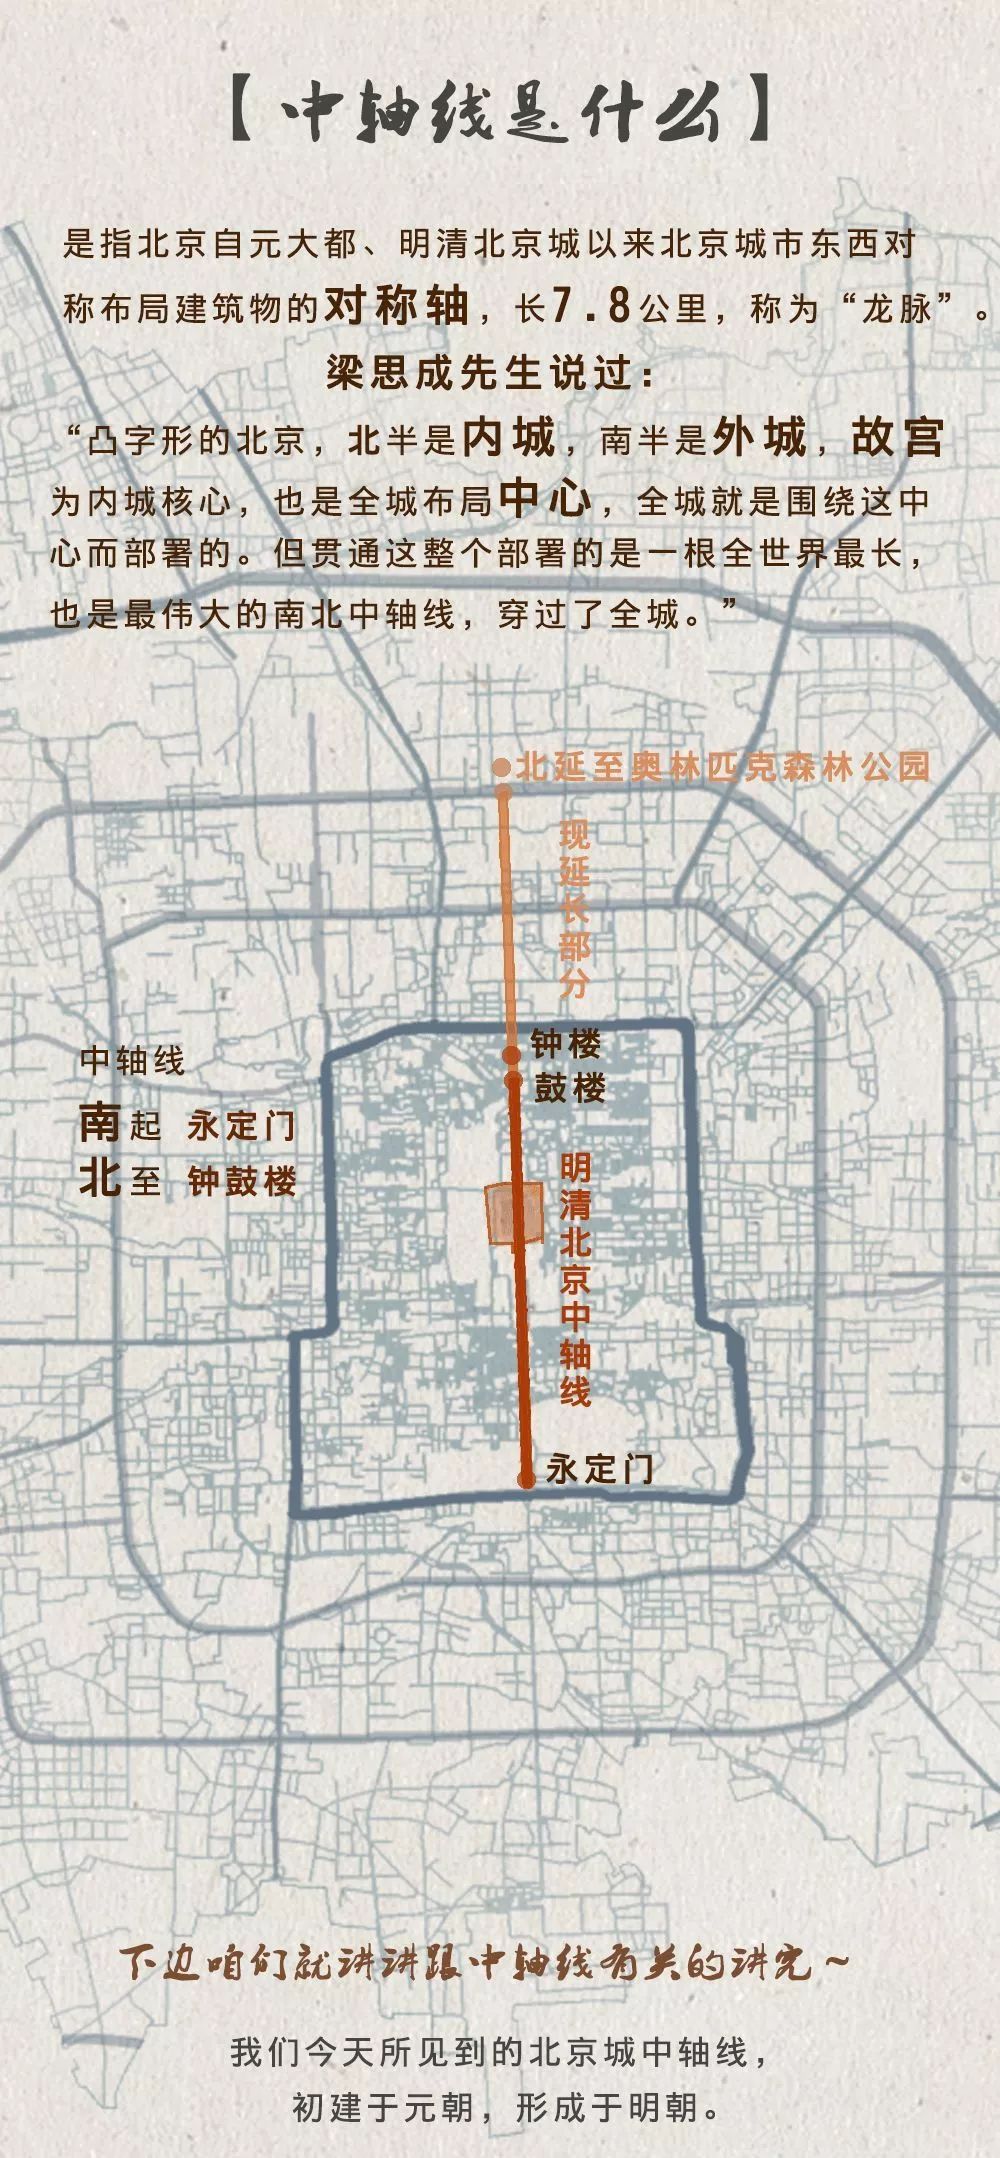 打开北京城市地图 就会发现 有一条贯穿整个老城的轴线 今天我们就带